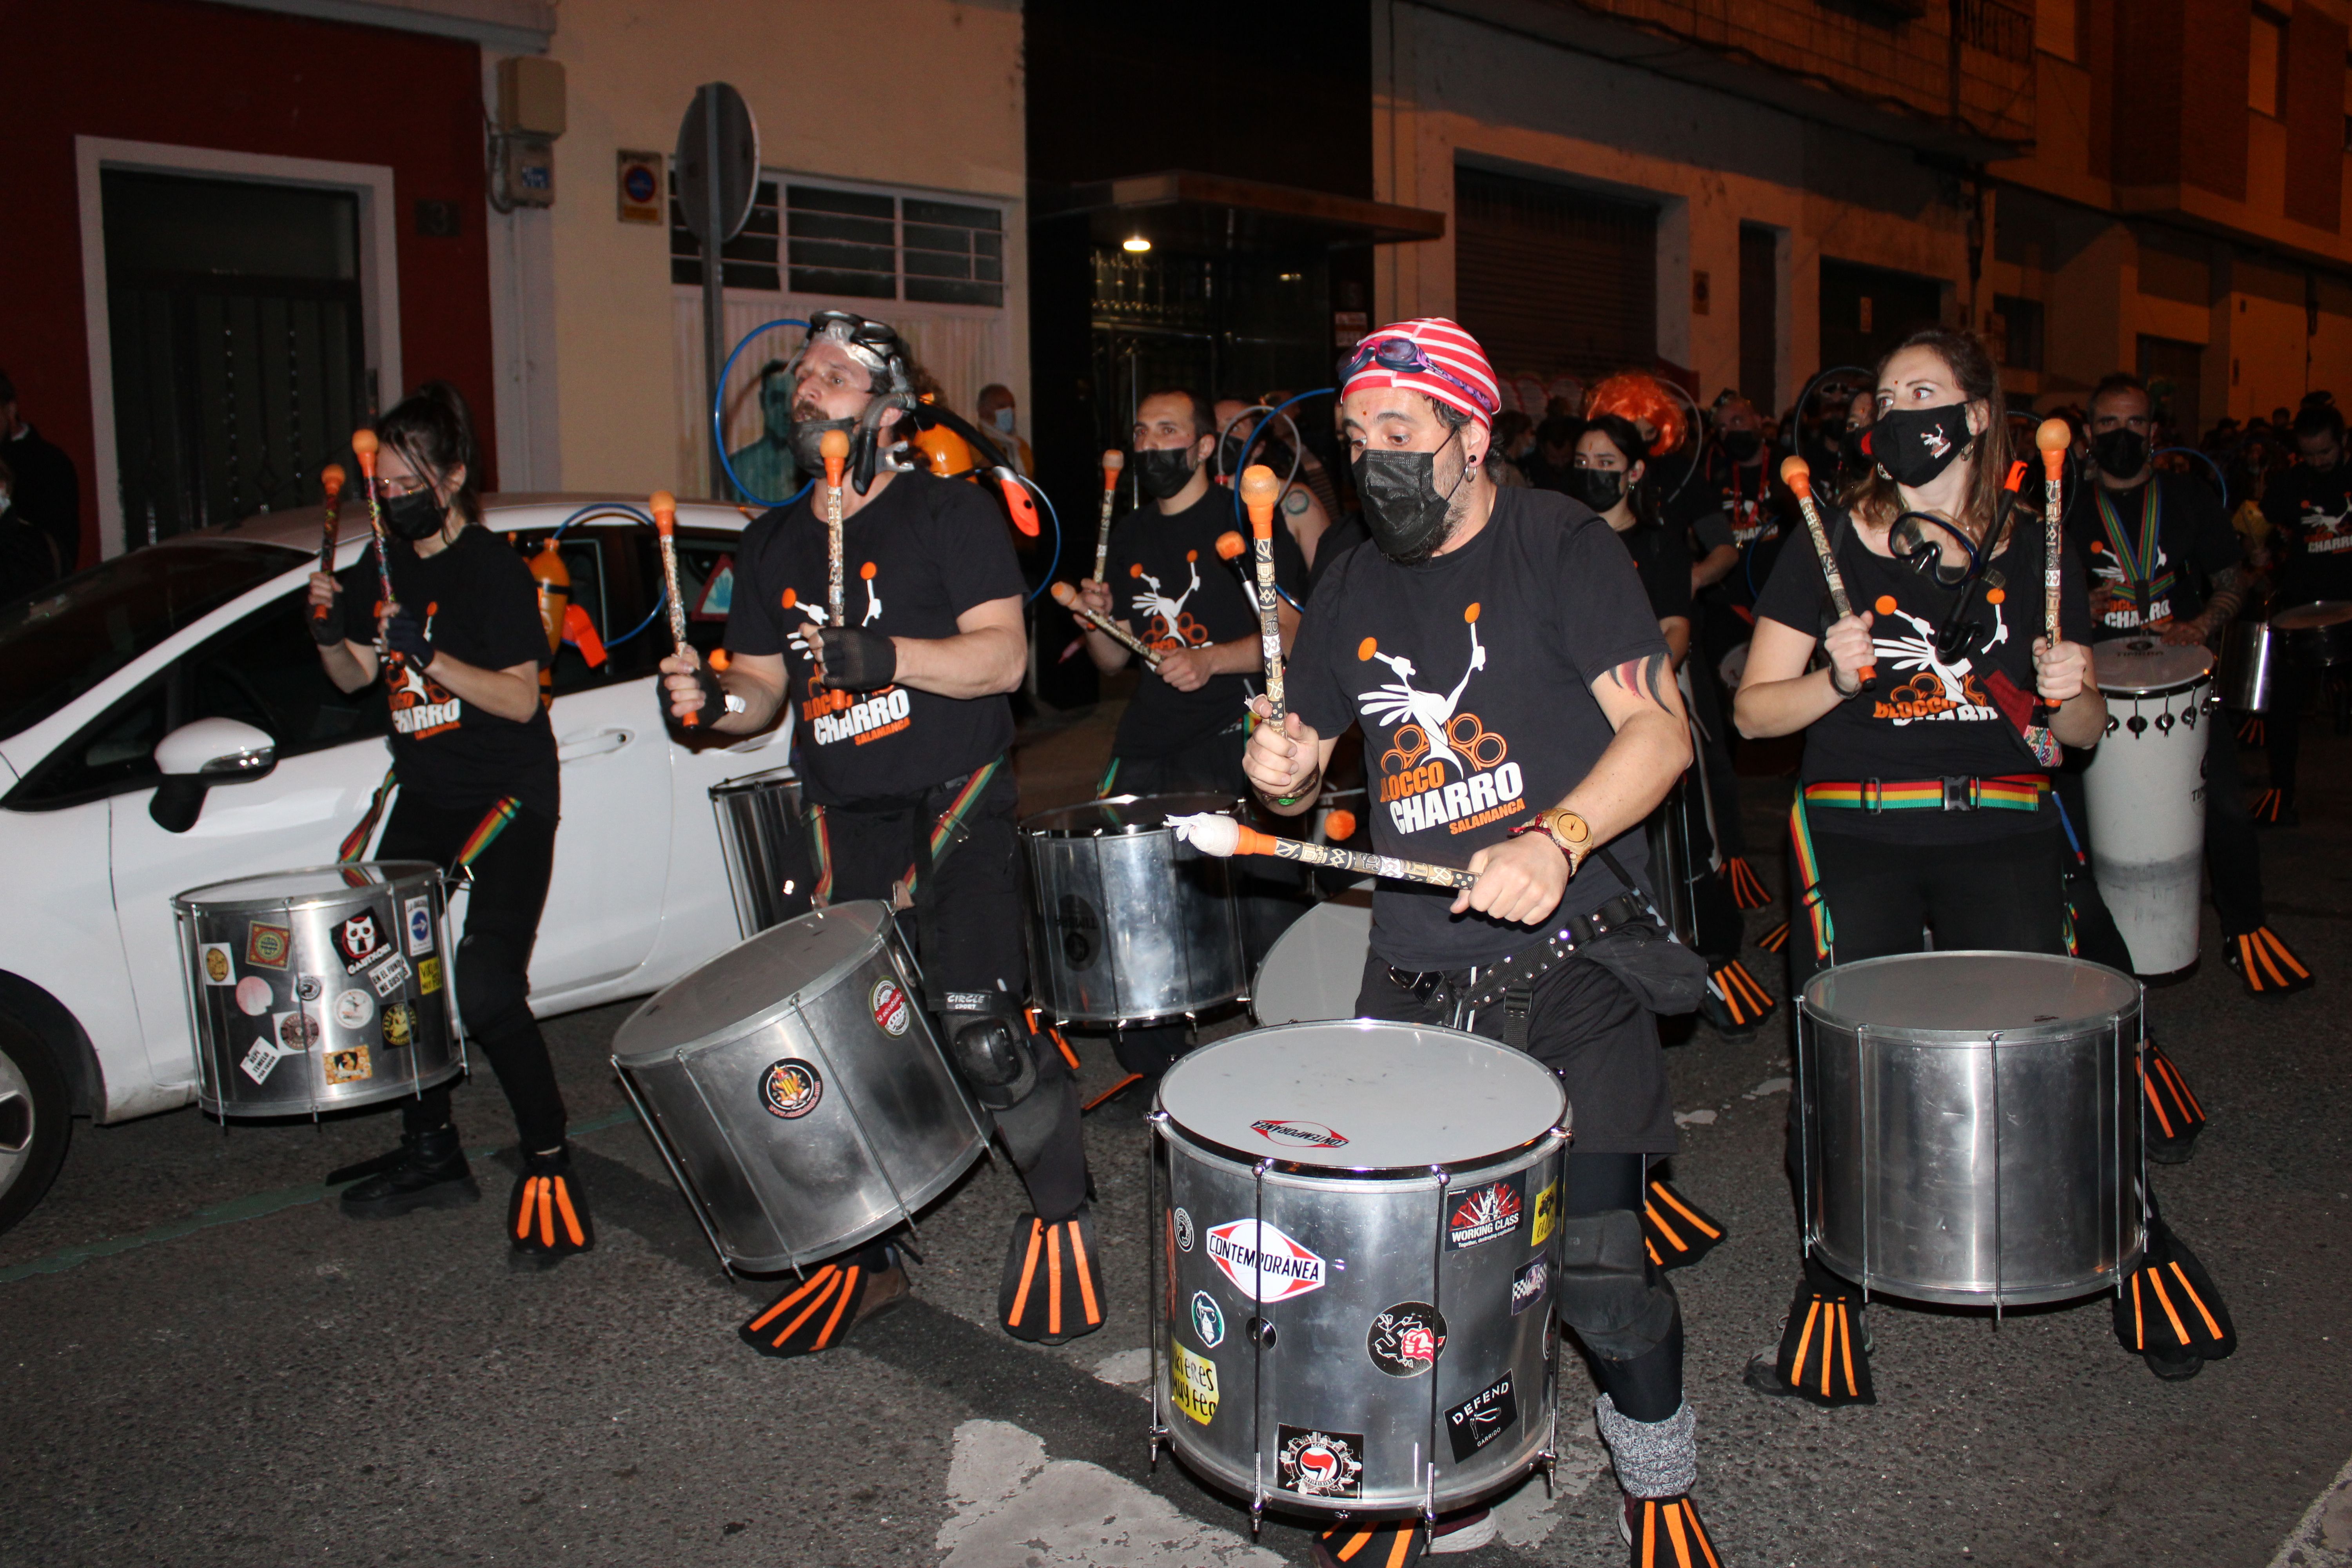 El barrio del Oeste continúa el carnaval a ritmo de charanga y batucada (13)